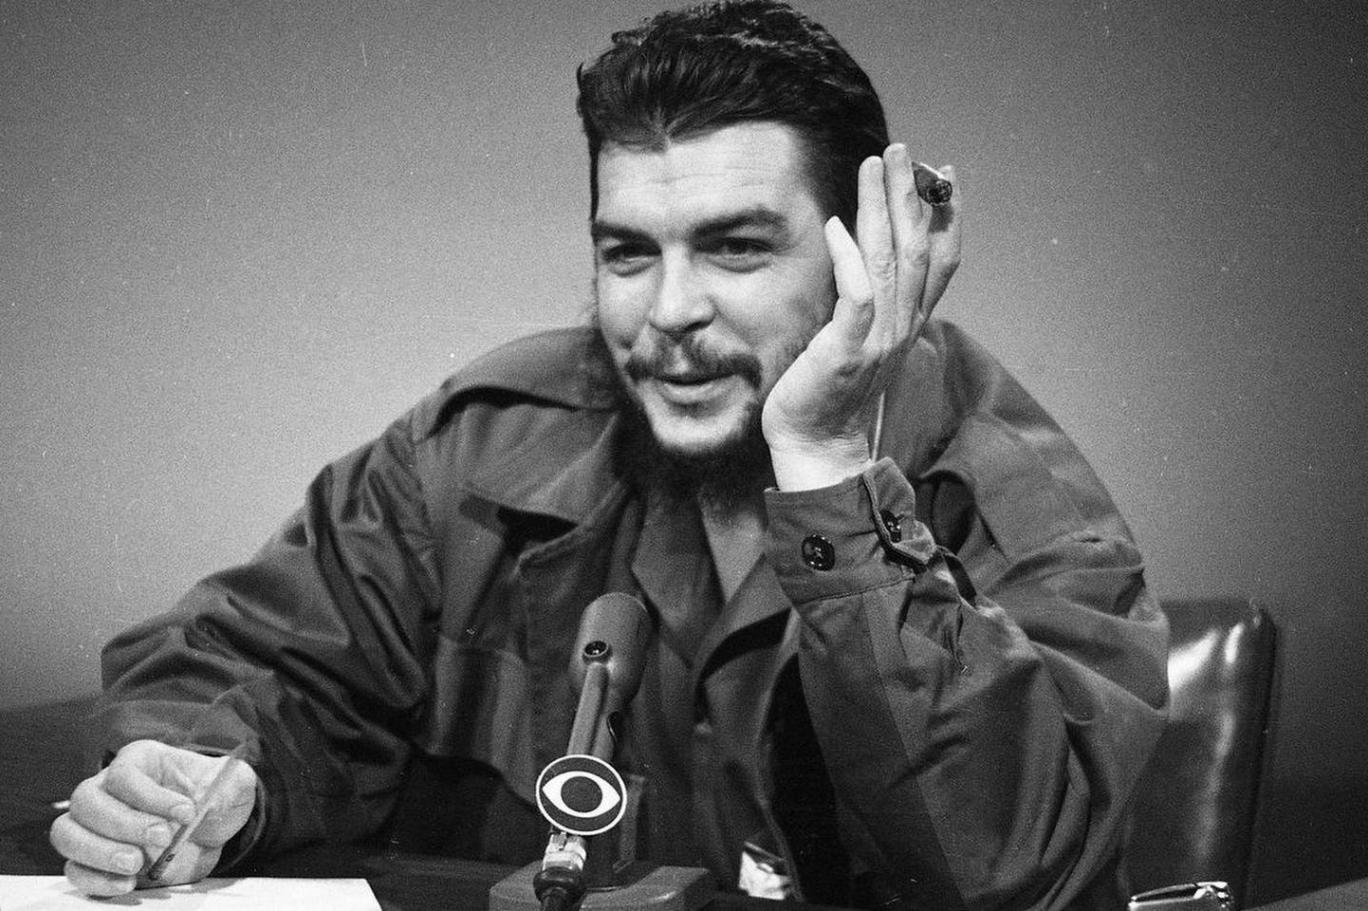 Devrimci bir kadavradan ötesi... Ernesto "Che" Guevara 9 Ekim 1967'de Bolivya'da kurşuna dizildi | Independent Türkçe